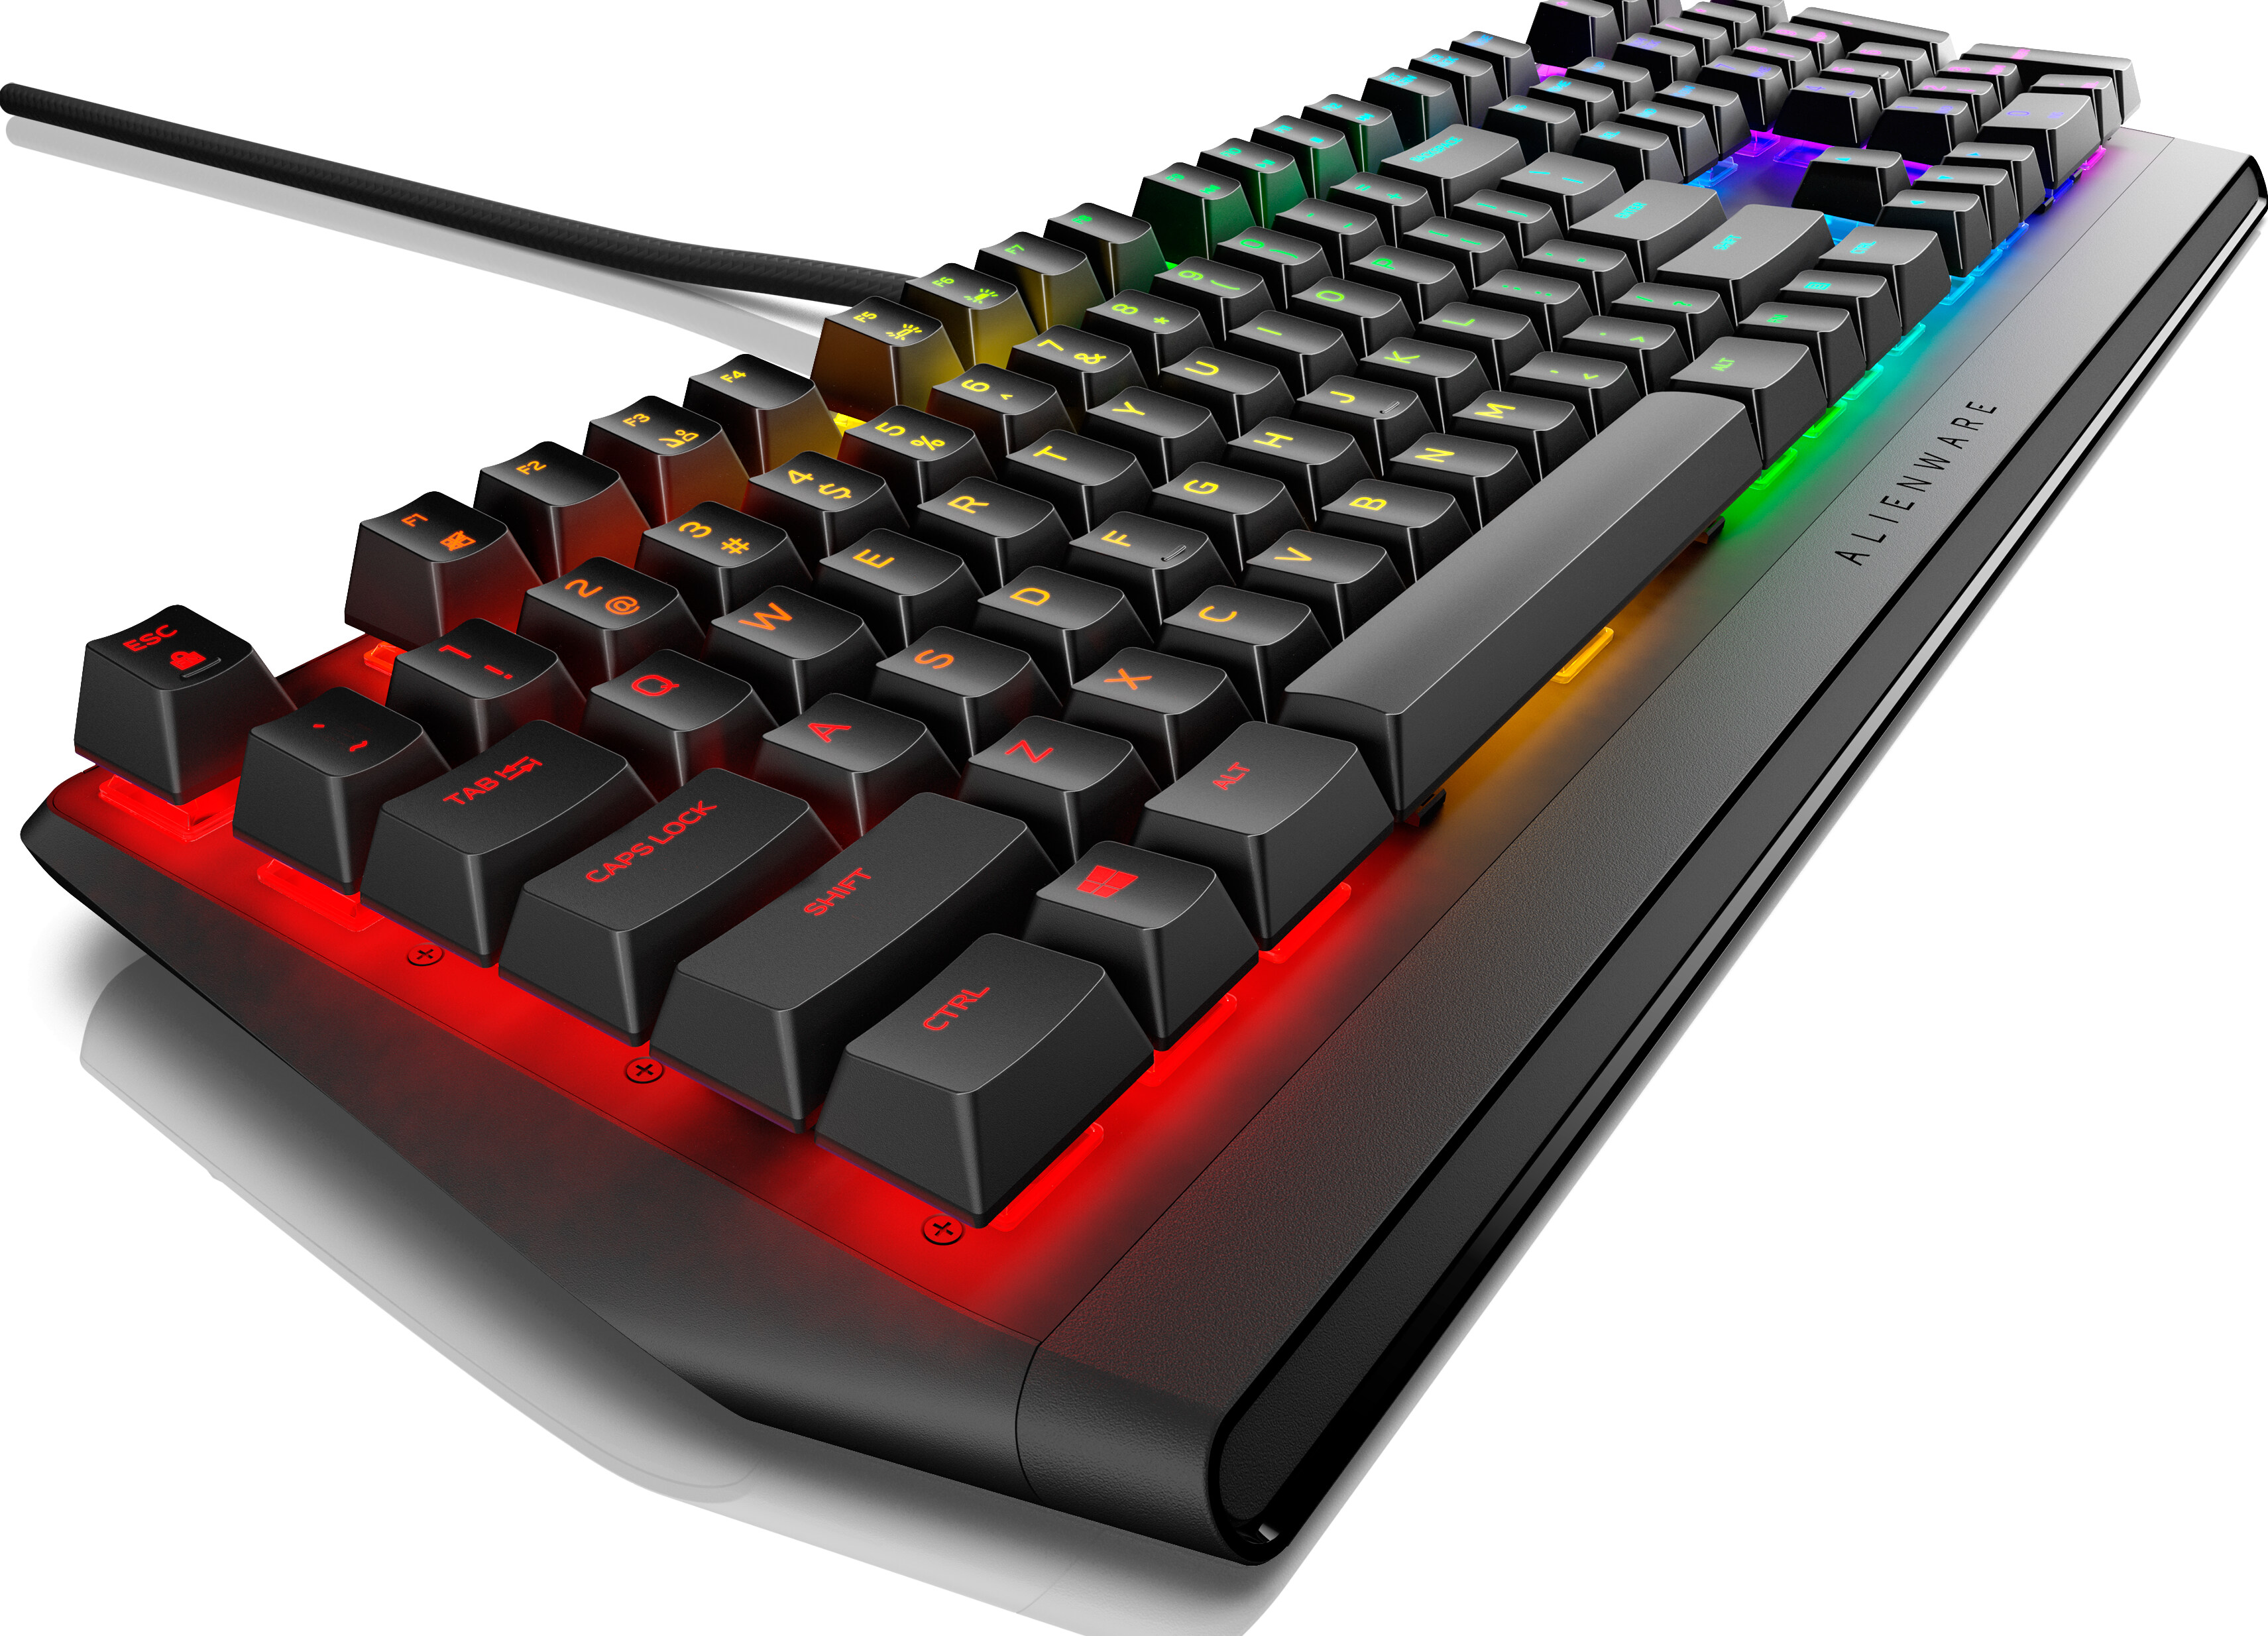 Alienware RGB Mechanical Gaming Keyboard - AW410K